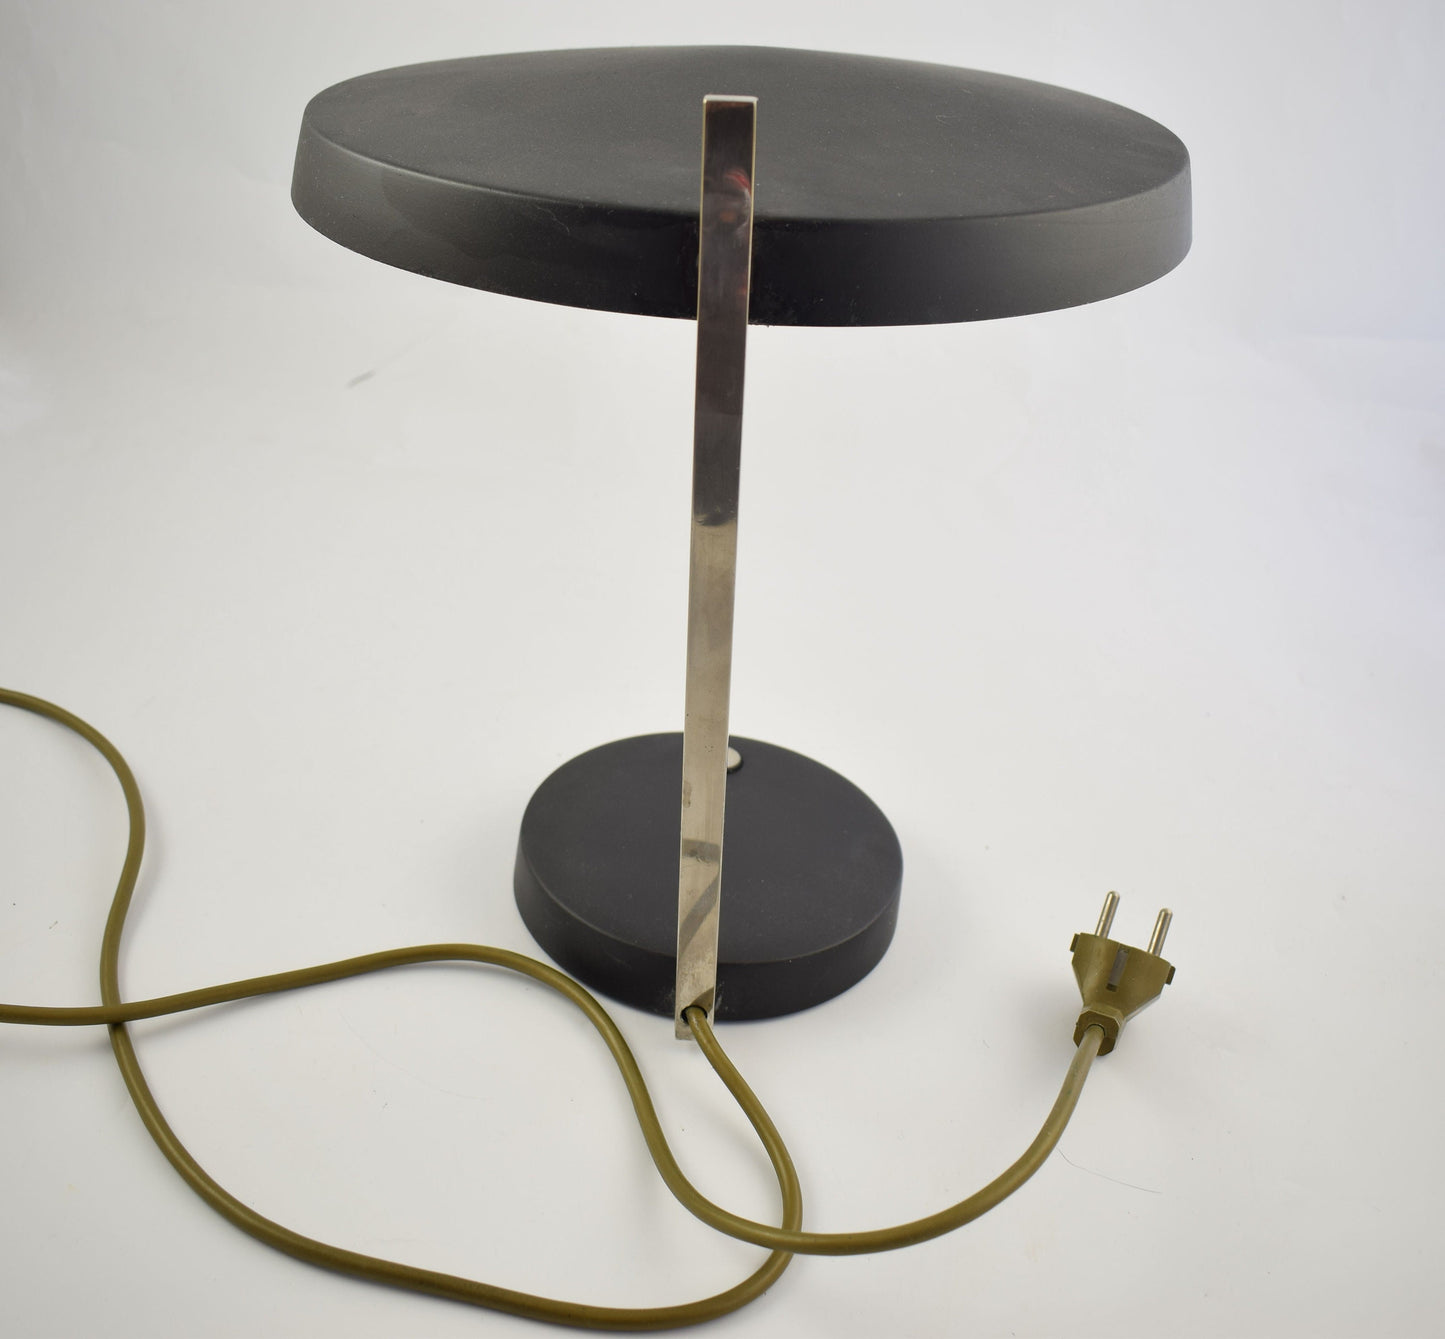 Hillebrand leuchten table lamp Oslo, black desk lamp designed by Heinz Pfaender 1962.